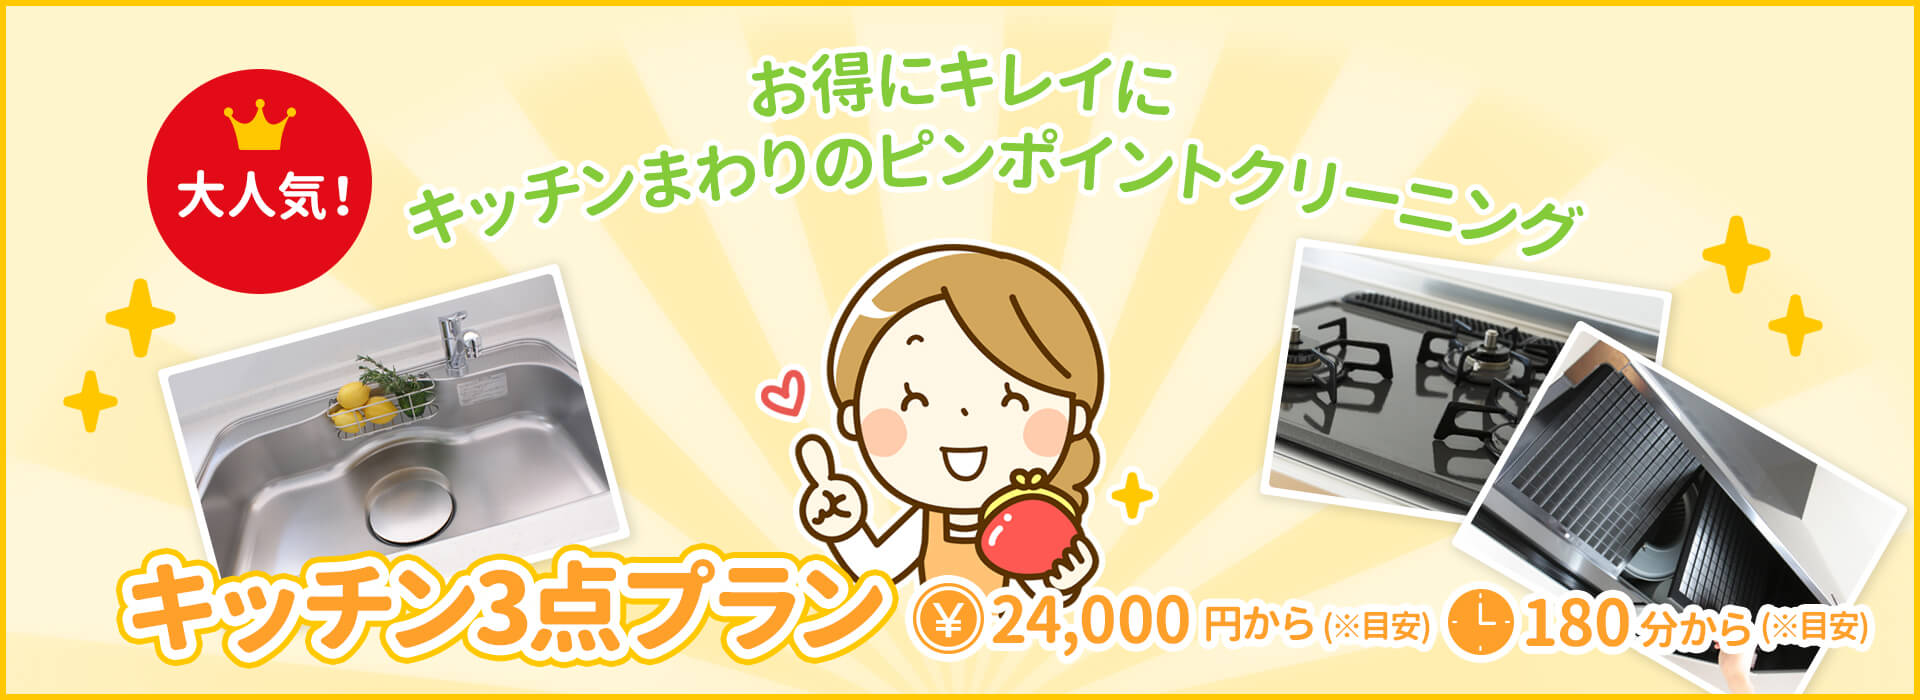 キッチン3点プラン ¥24,000〜(目安) 約180分〜